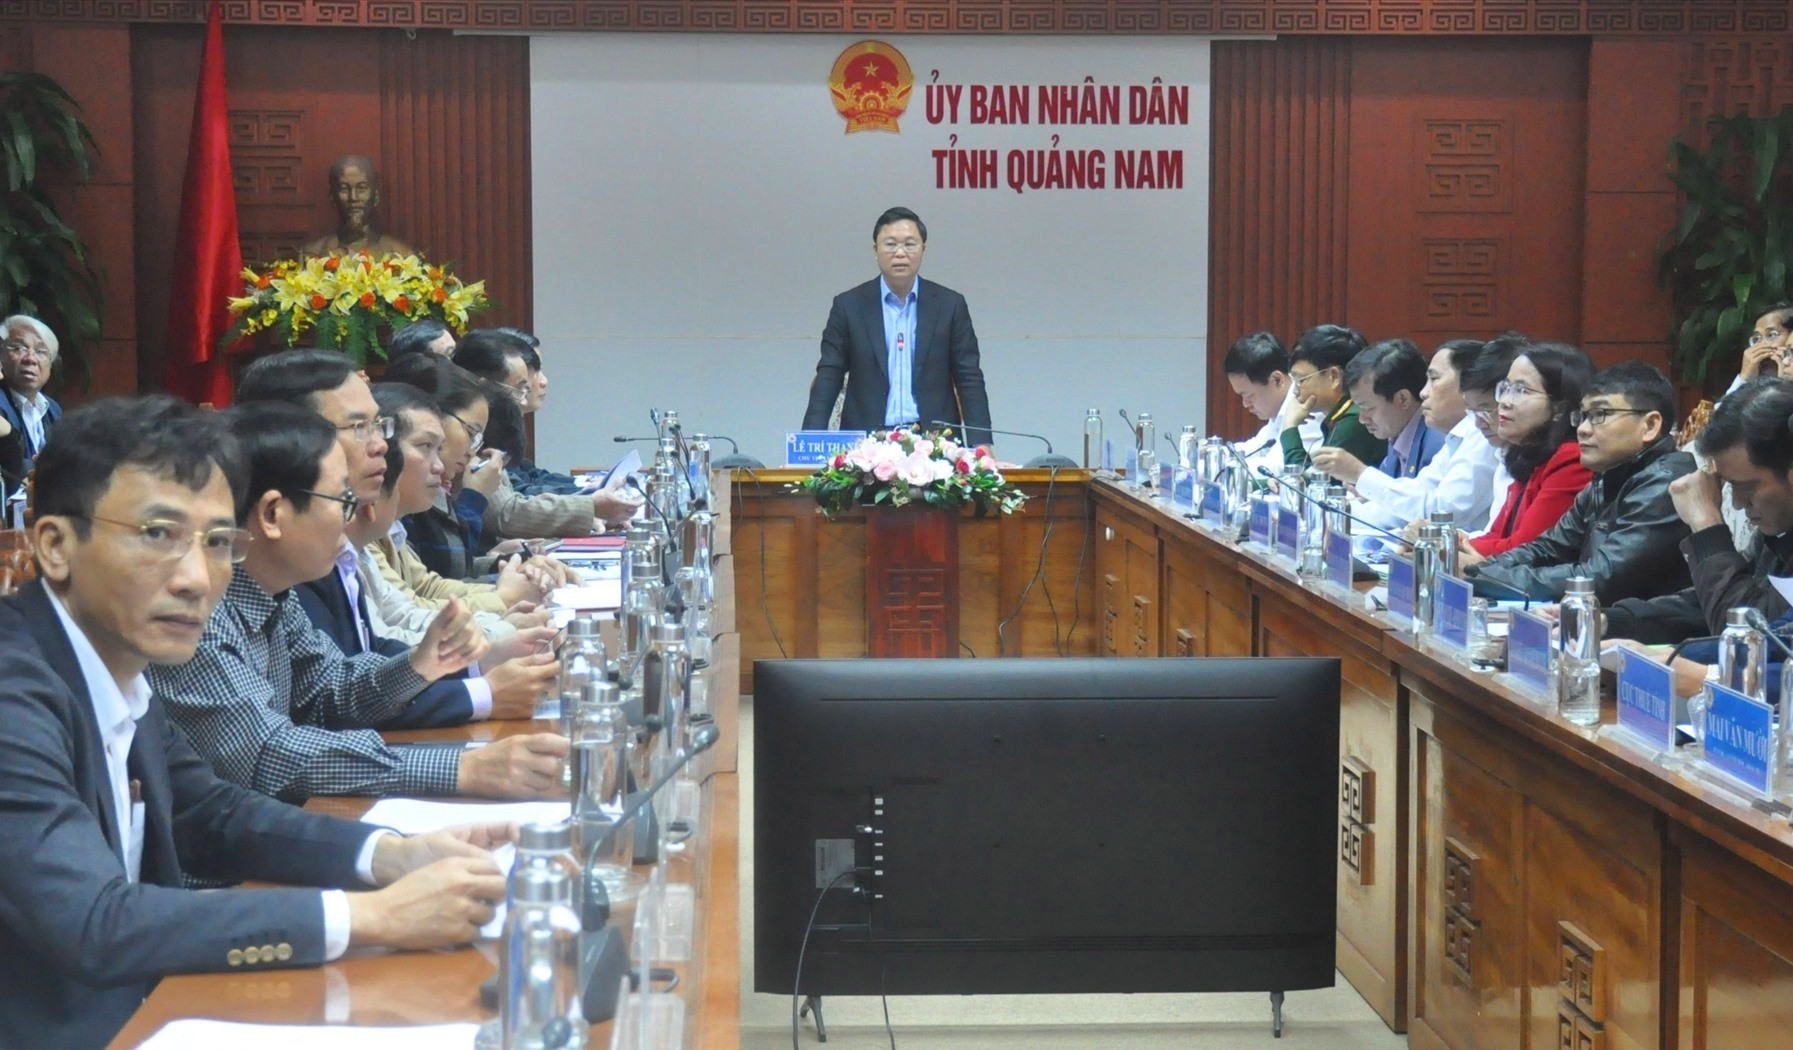 Chủ tịch UBND tỉnh Lê Trí Thanh phát biểu kết luận hội nghị sáng nay 31.12. Ảnh: N.Đ